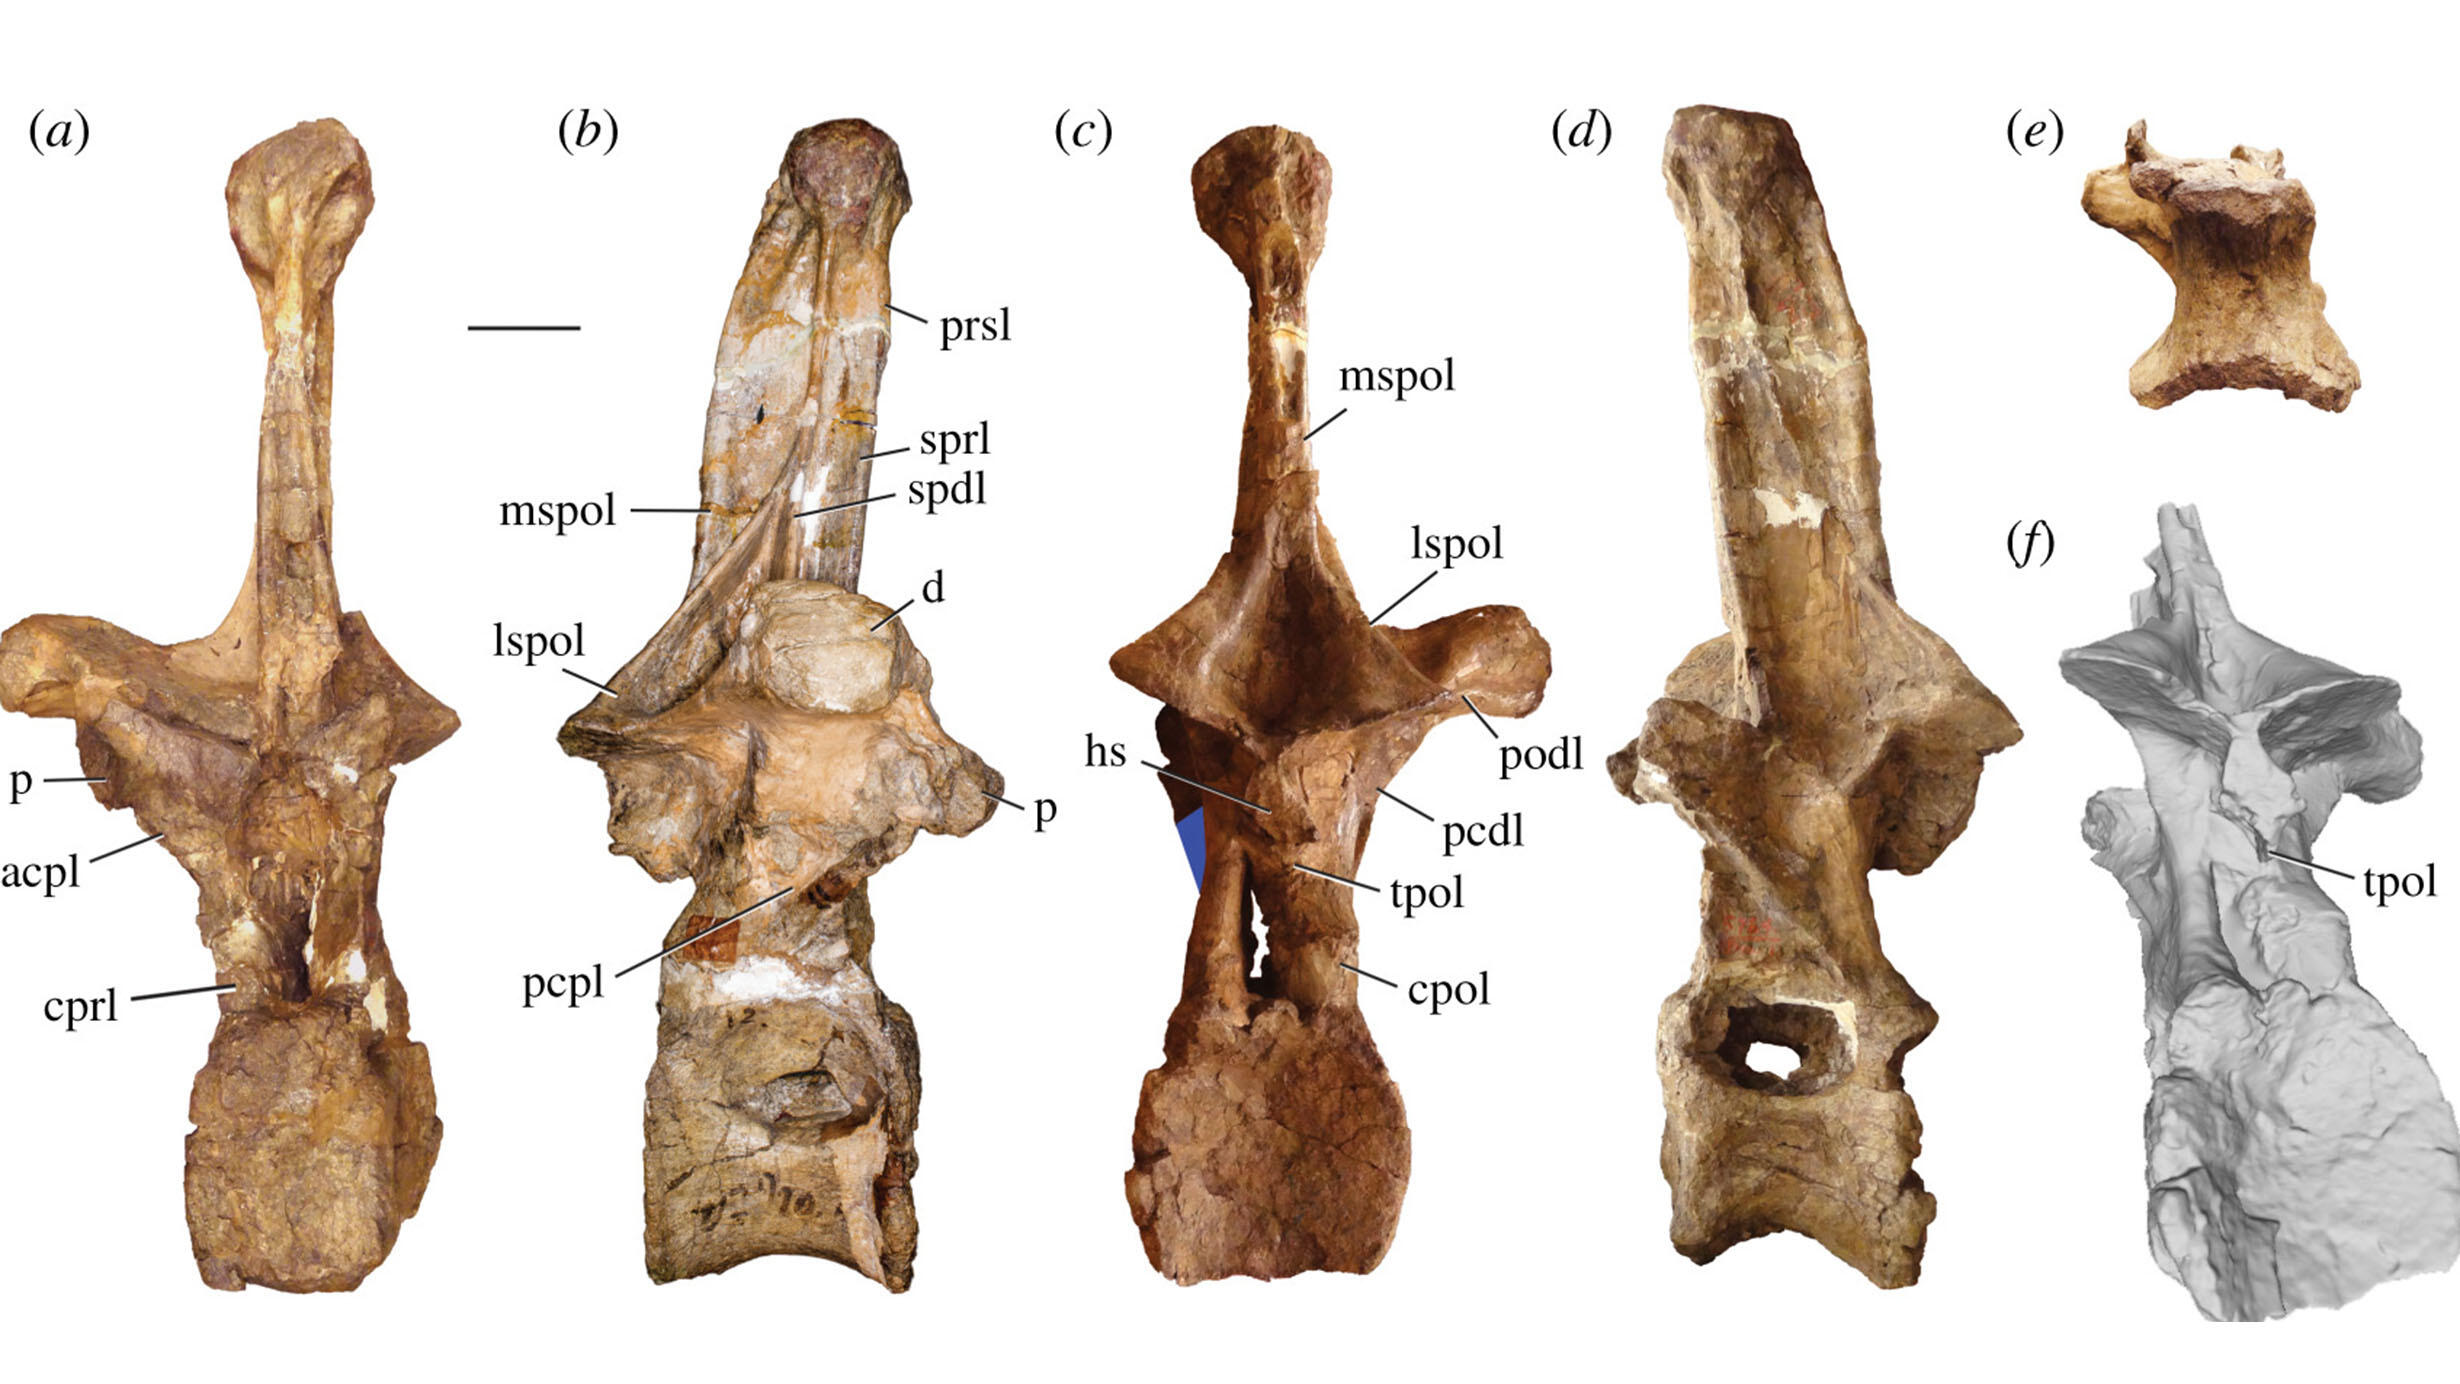 Five views of an Amphicoelias altus vertebra fossil.